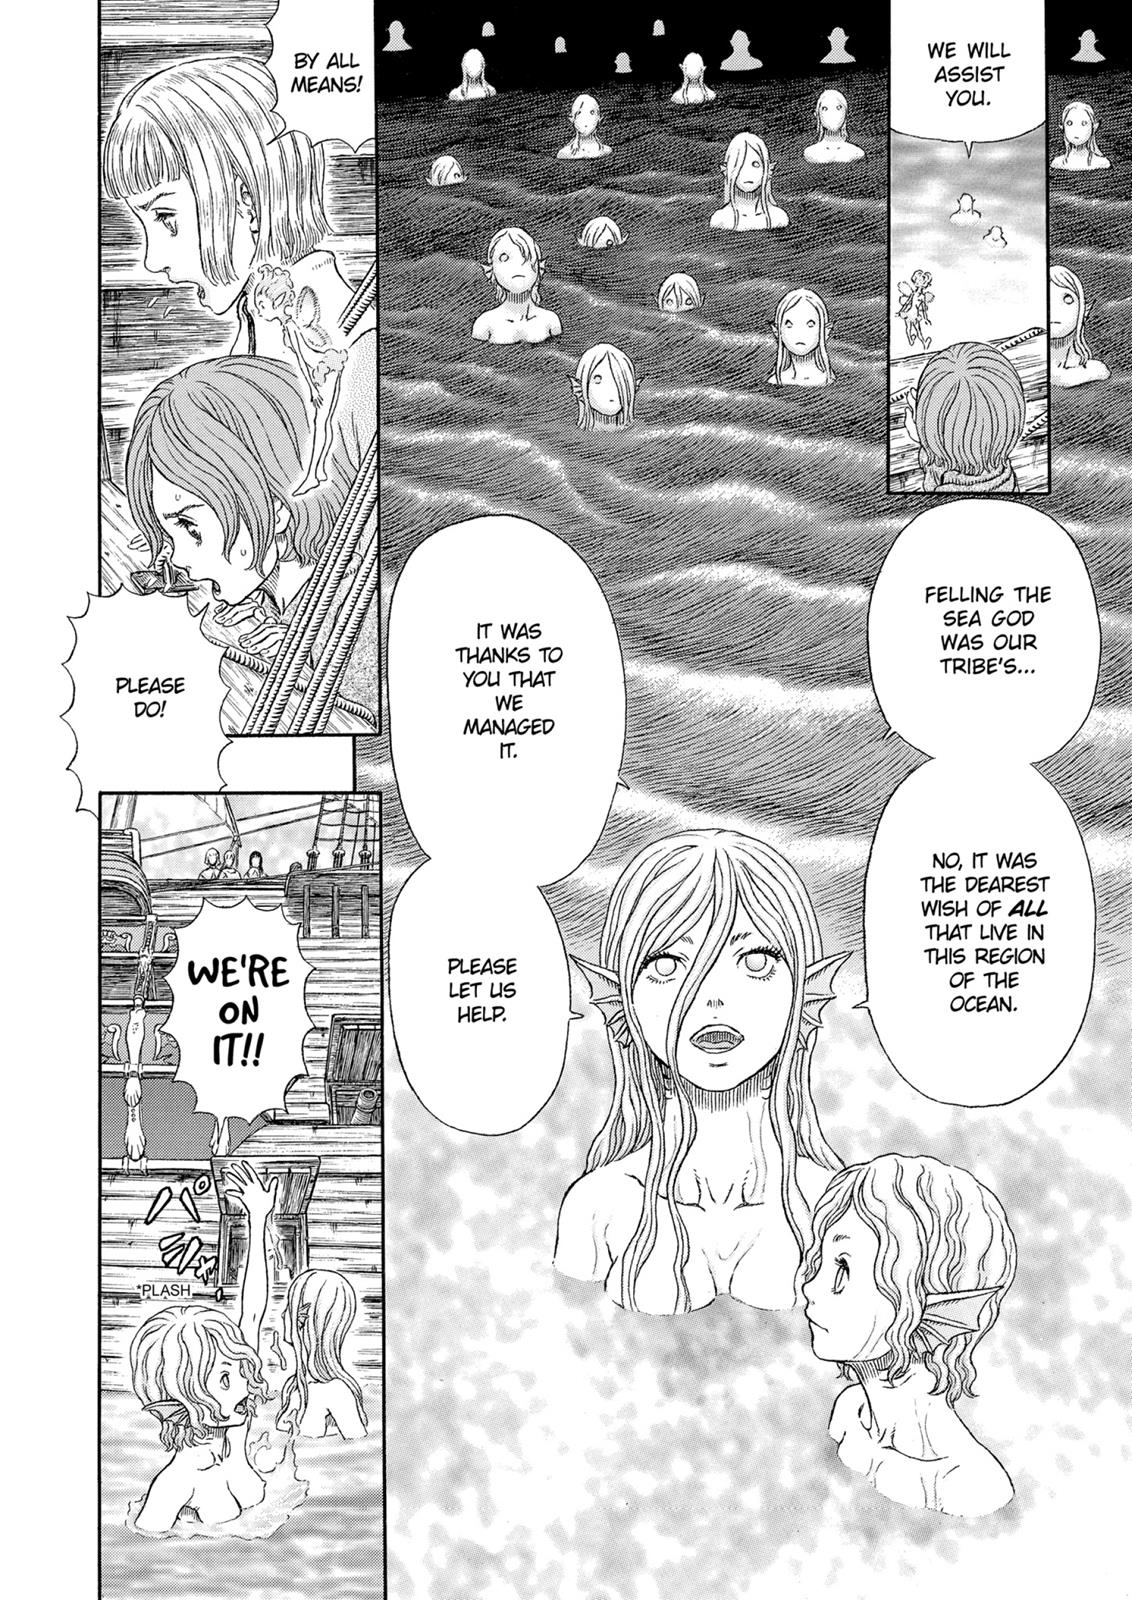 Berserk Manga Chapter 327 image 07